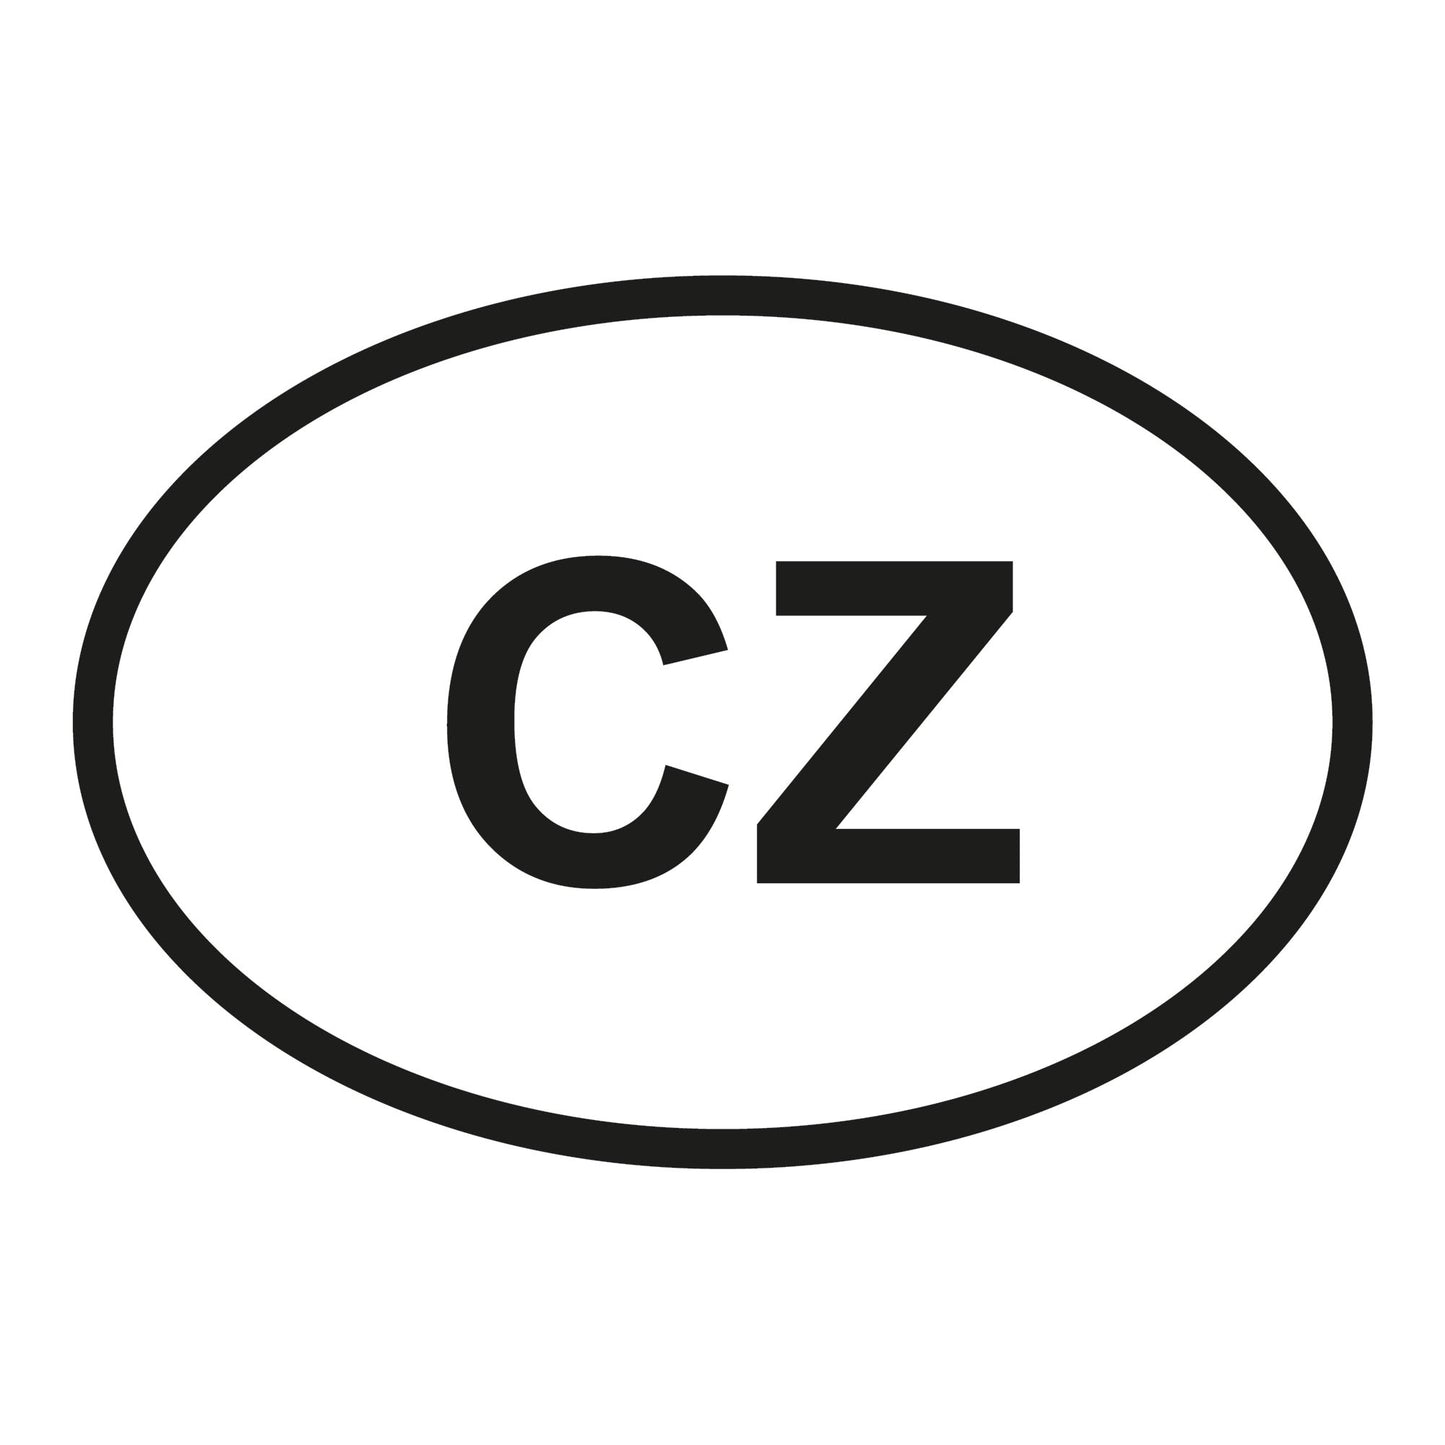 Autoaufkleber - Tschechien CZ - 160x110mm